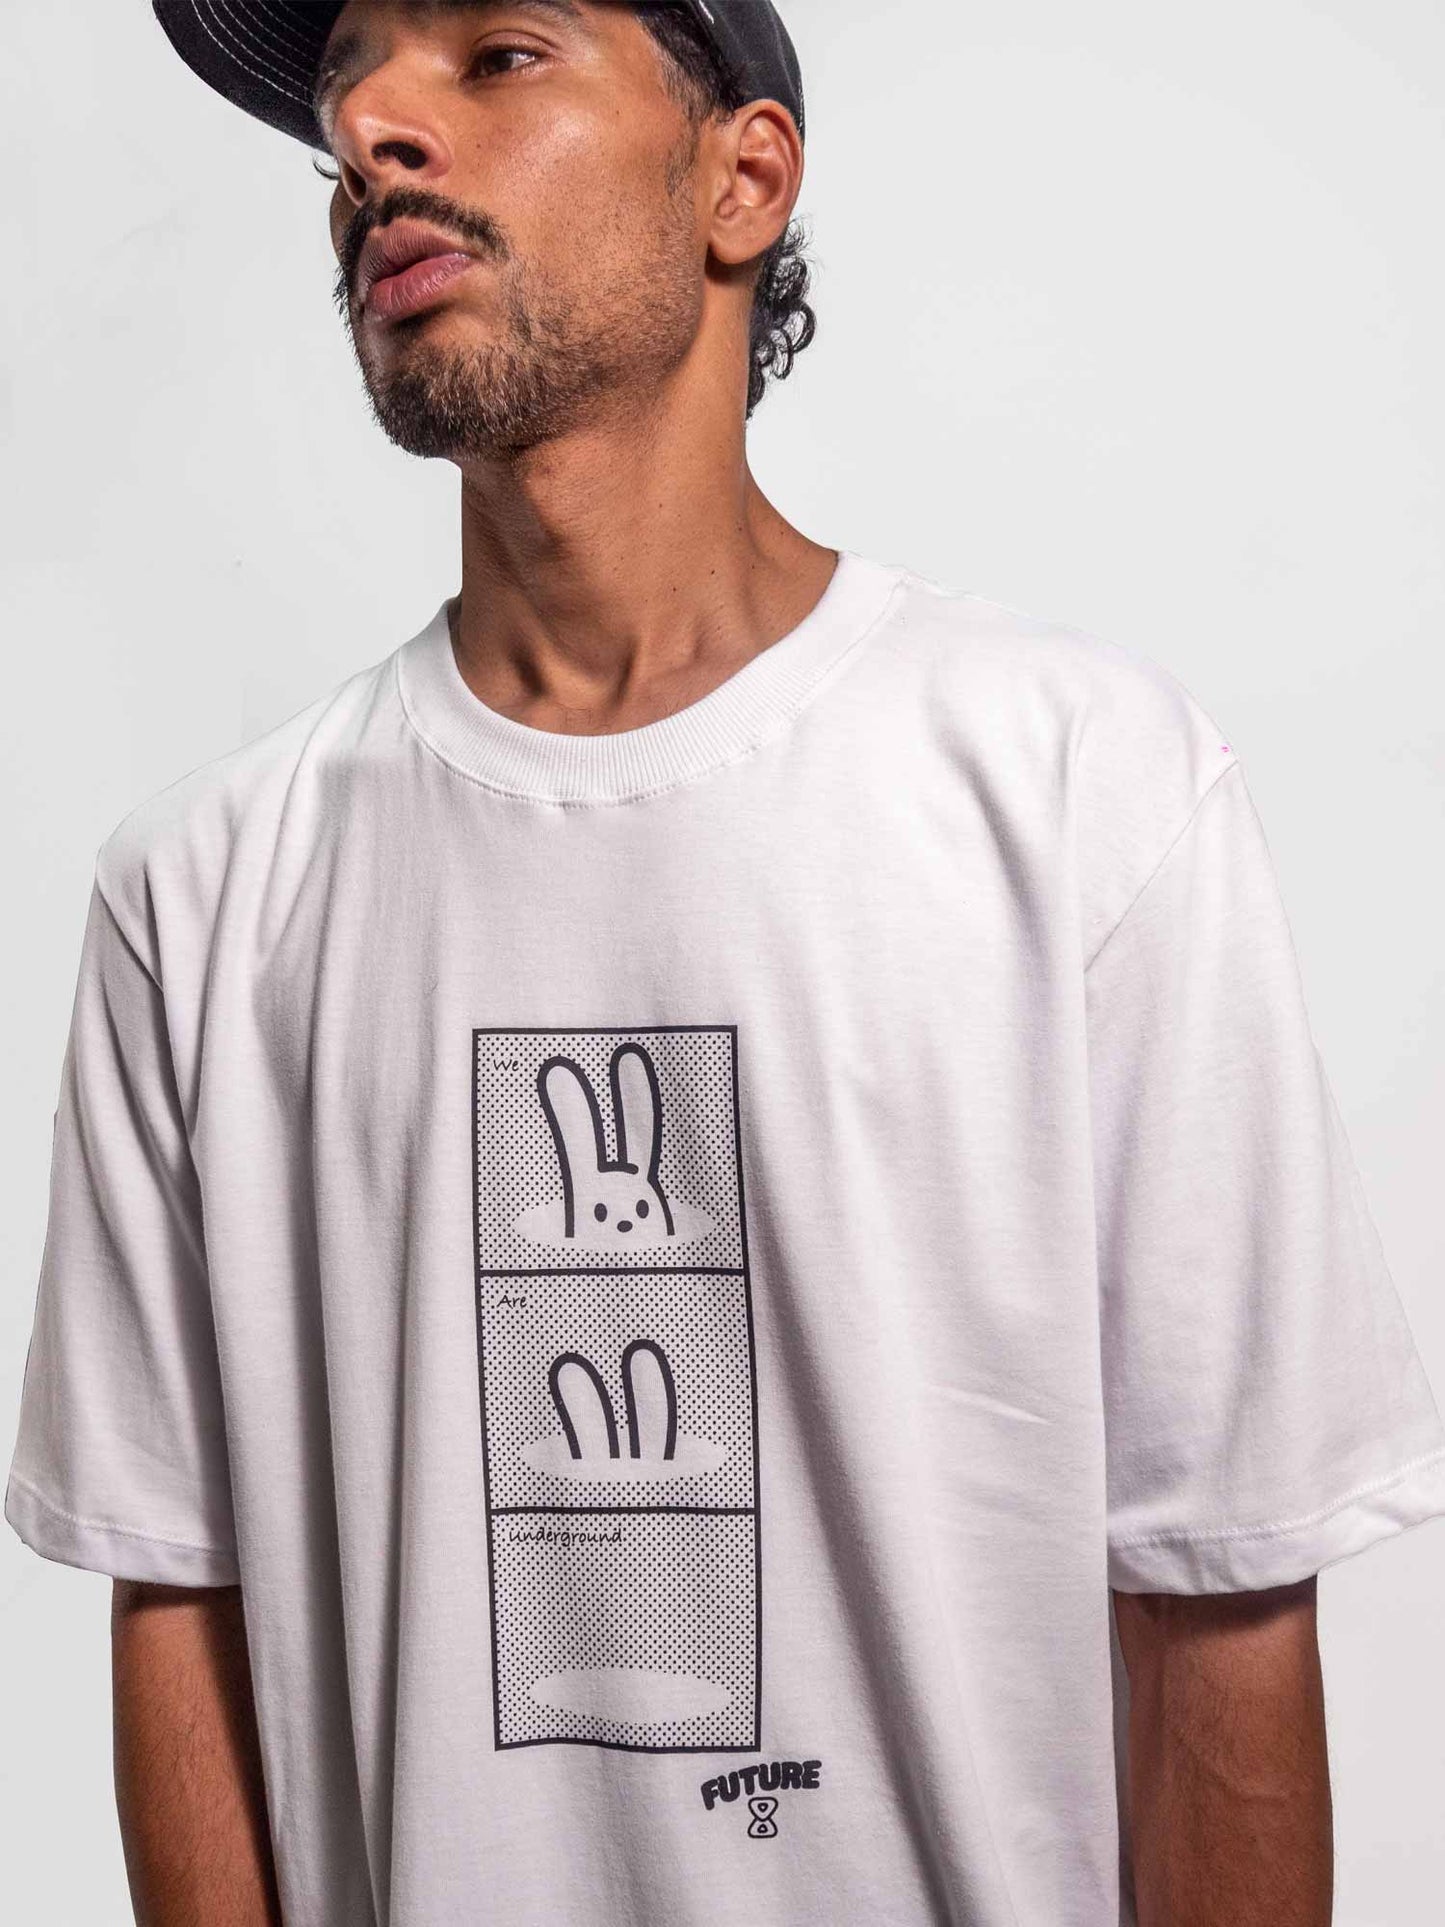     Camiseta-Future-Underground-Branca-Frente-Corpo